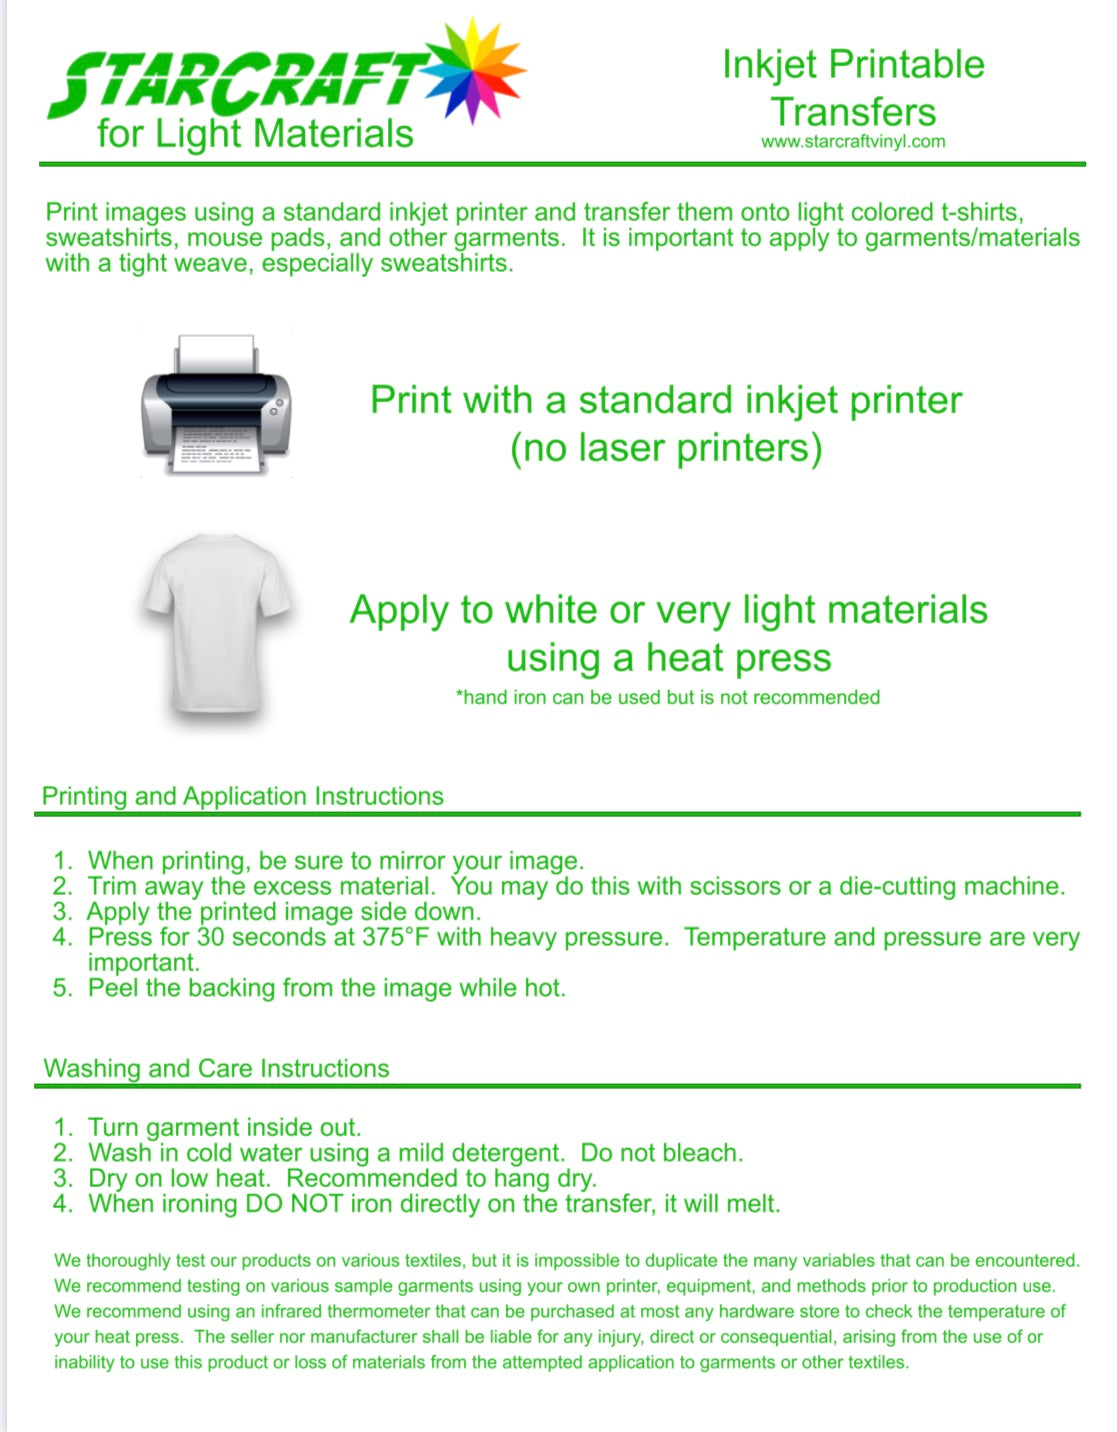 Inkjet Printable Heat Transfer Vinyl for Cricut